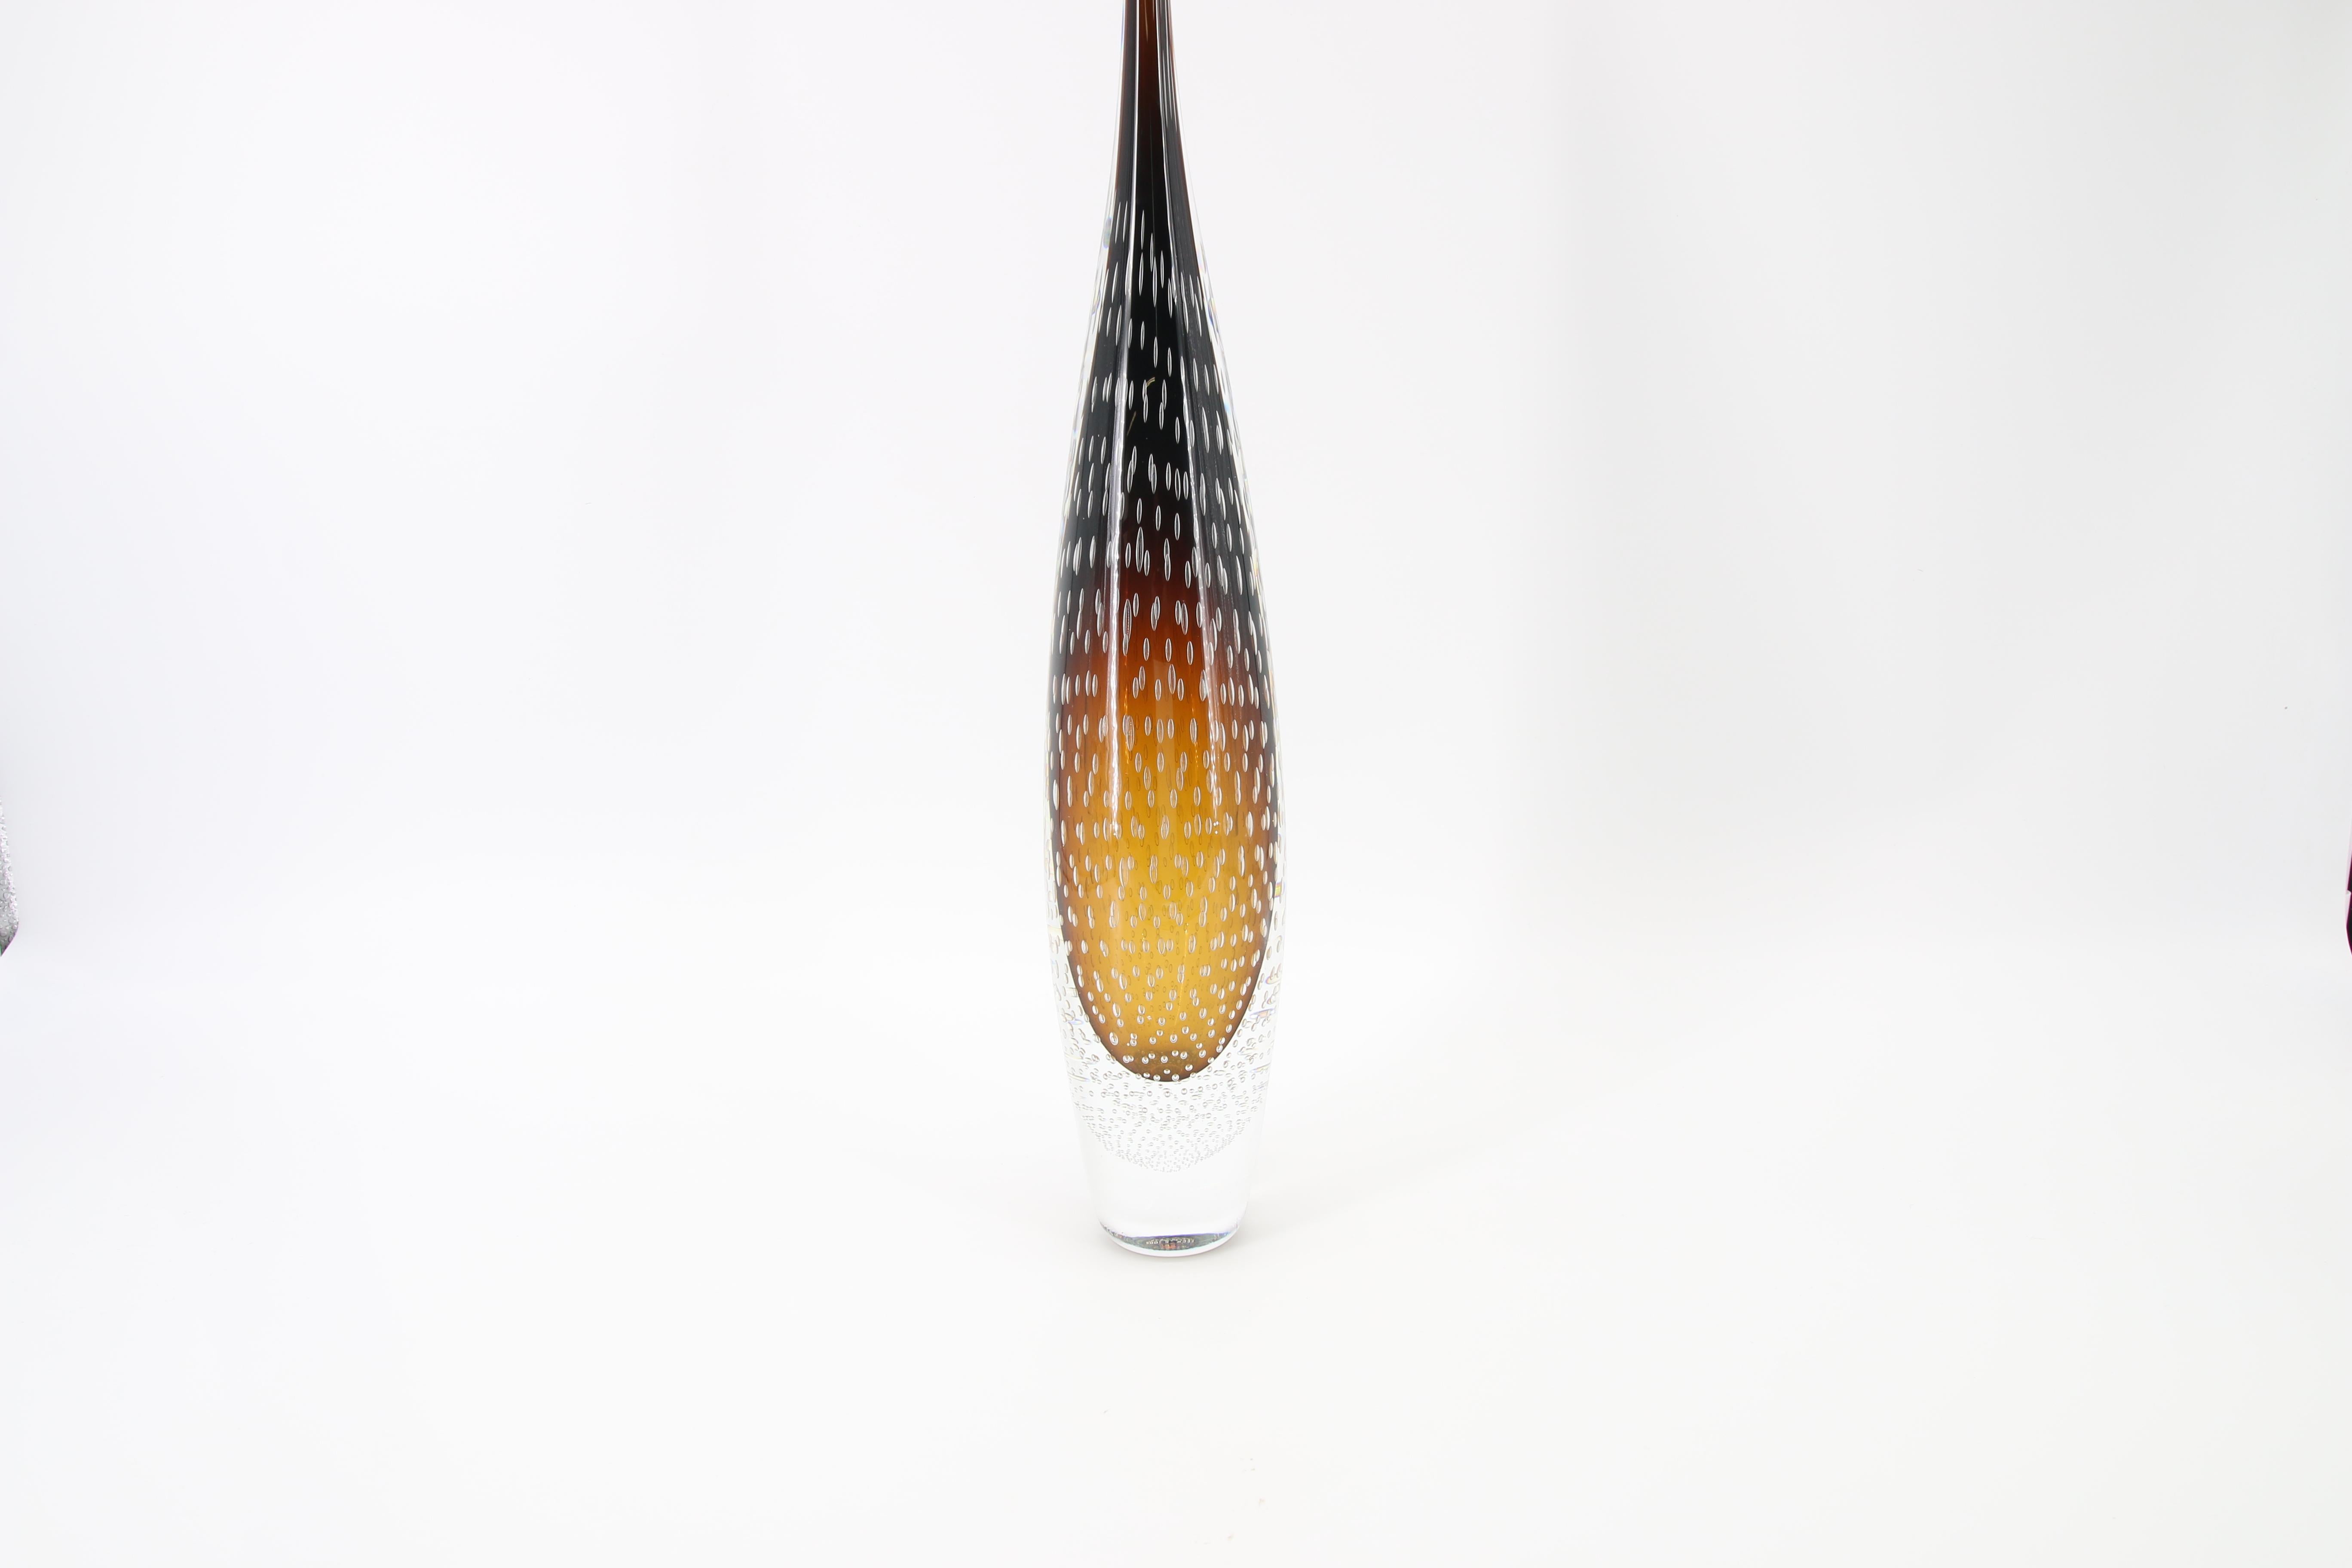 Aggiungi un tocco di eleganza e raffinatezza alla tua casa con il nostro straordinario vaso a goccia in vetro artistico di Murano. Questo vaso unico è stato creato con passione e maestria dai celebri maestri vetrai di Murano, rinomati per la loro